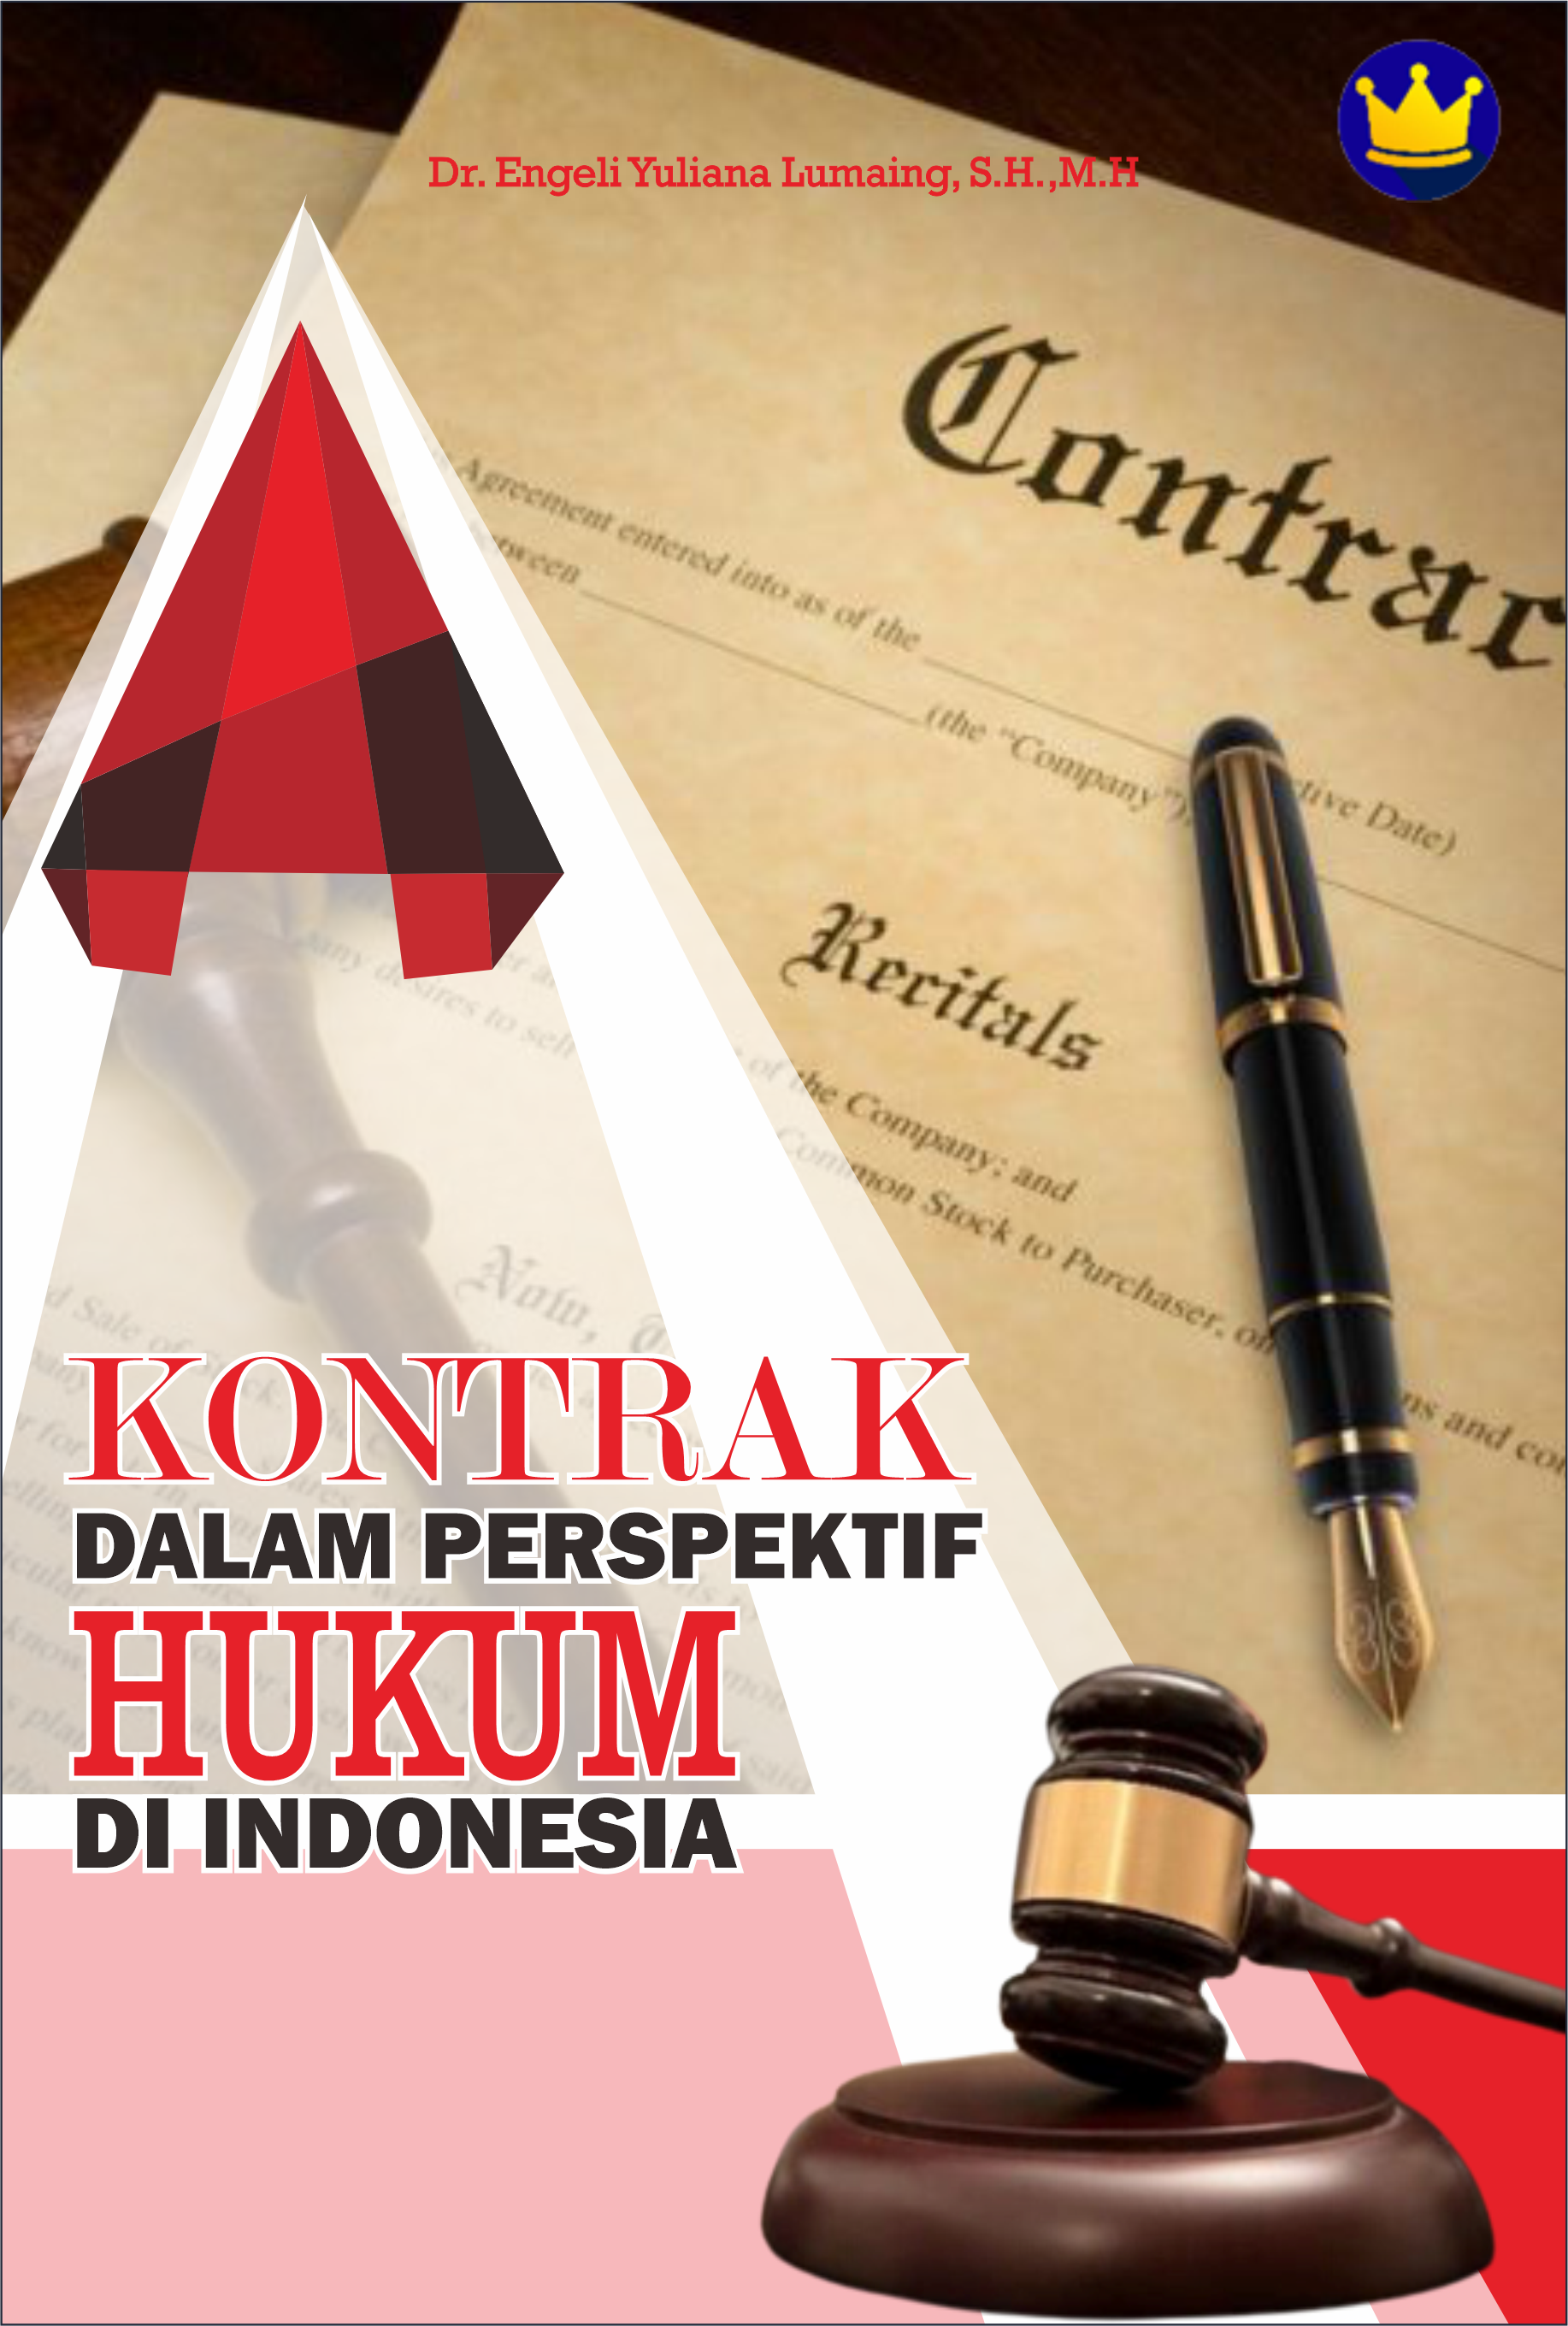 Kontrak dalam perspektif hukum di Indonesia [sumber elektronis]